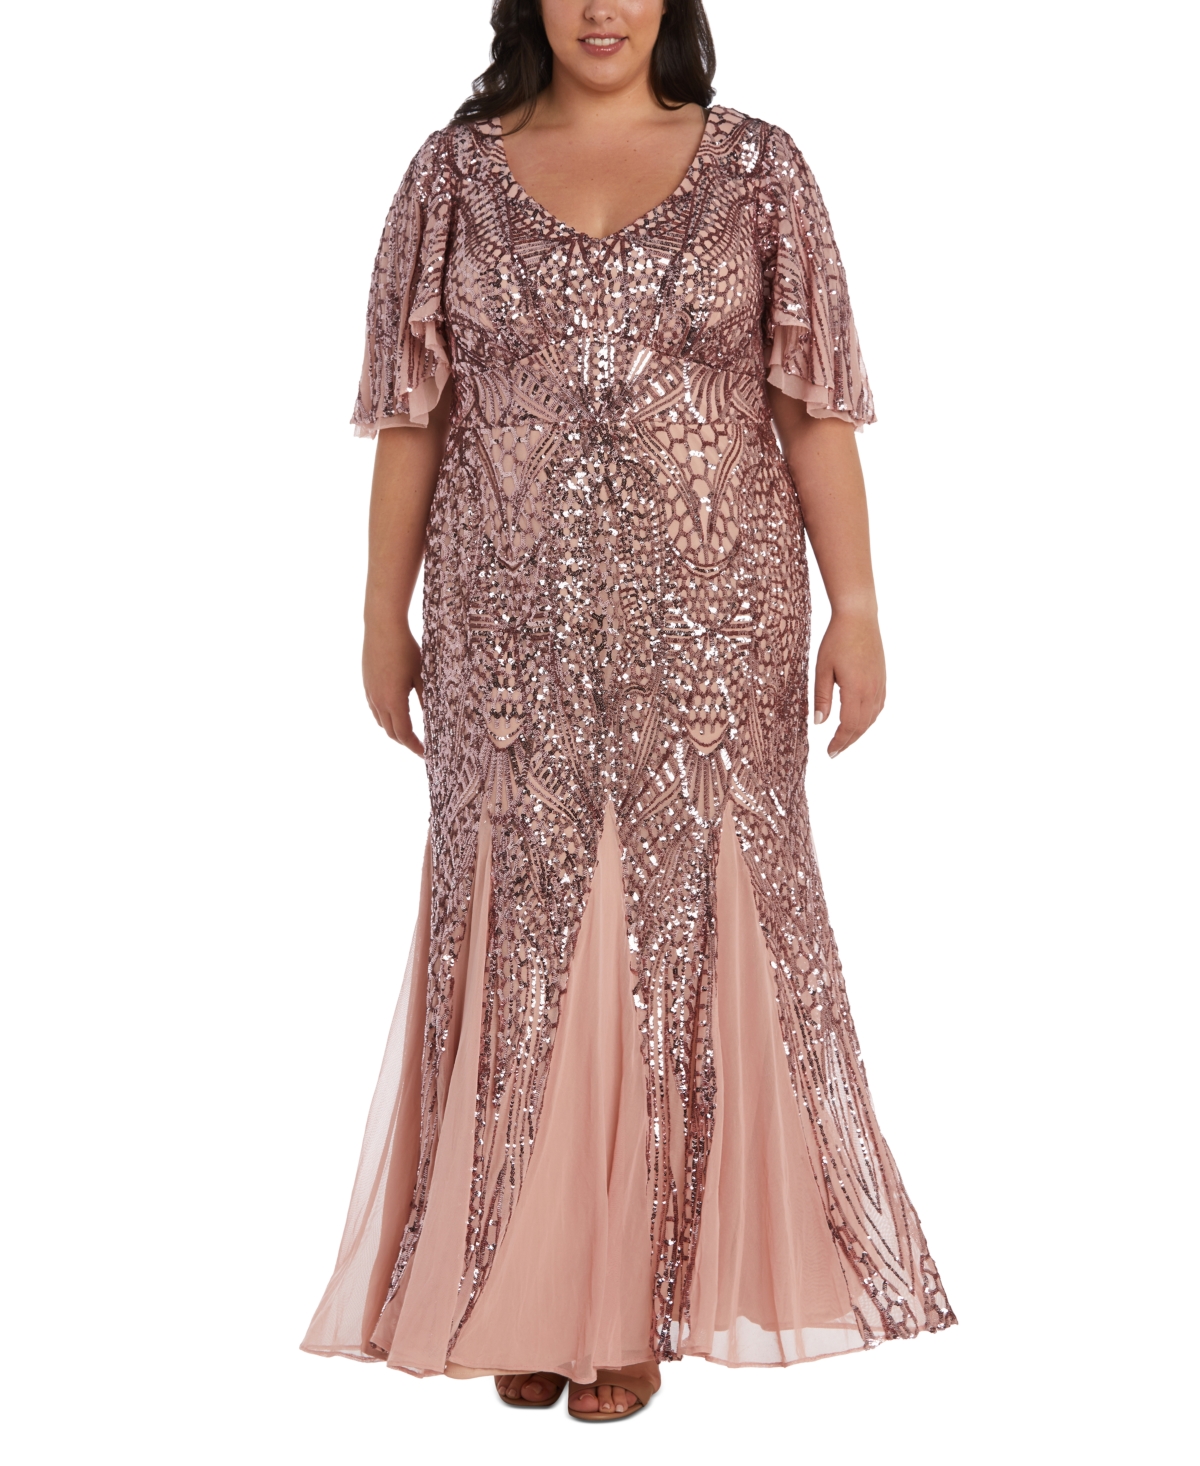 Buy Boardwalk Empire Inspired Dresses Nightway Plus Size Sequin Flutter-Sleeve Godet Gown - Mauve $209.00 AT vintagedancer.com